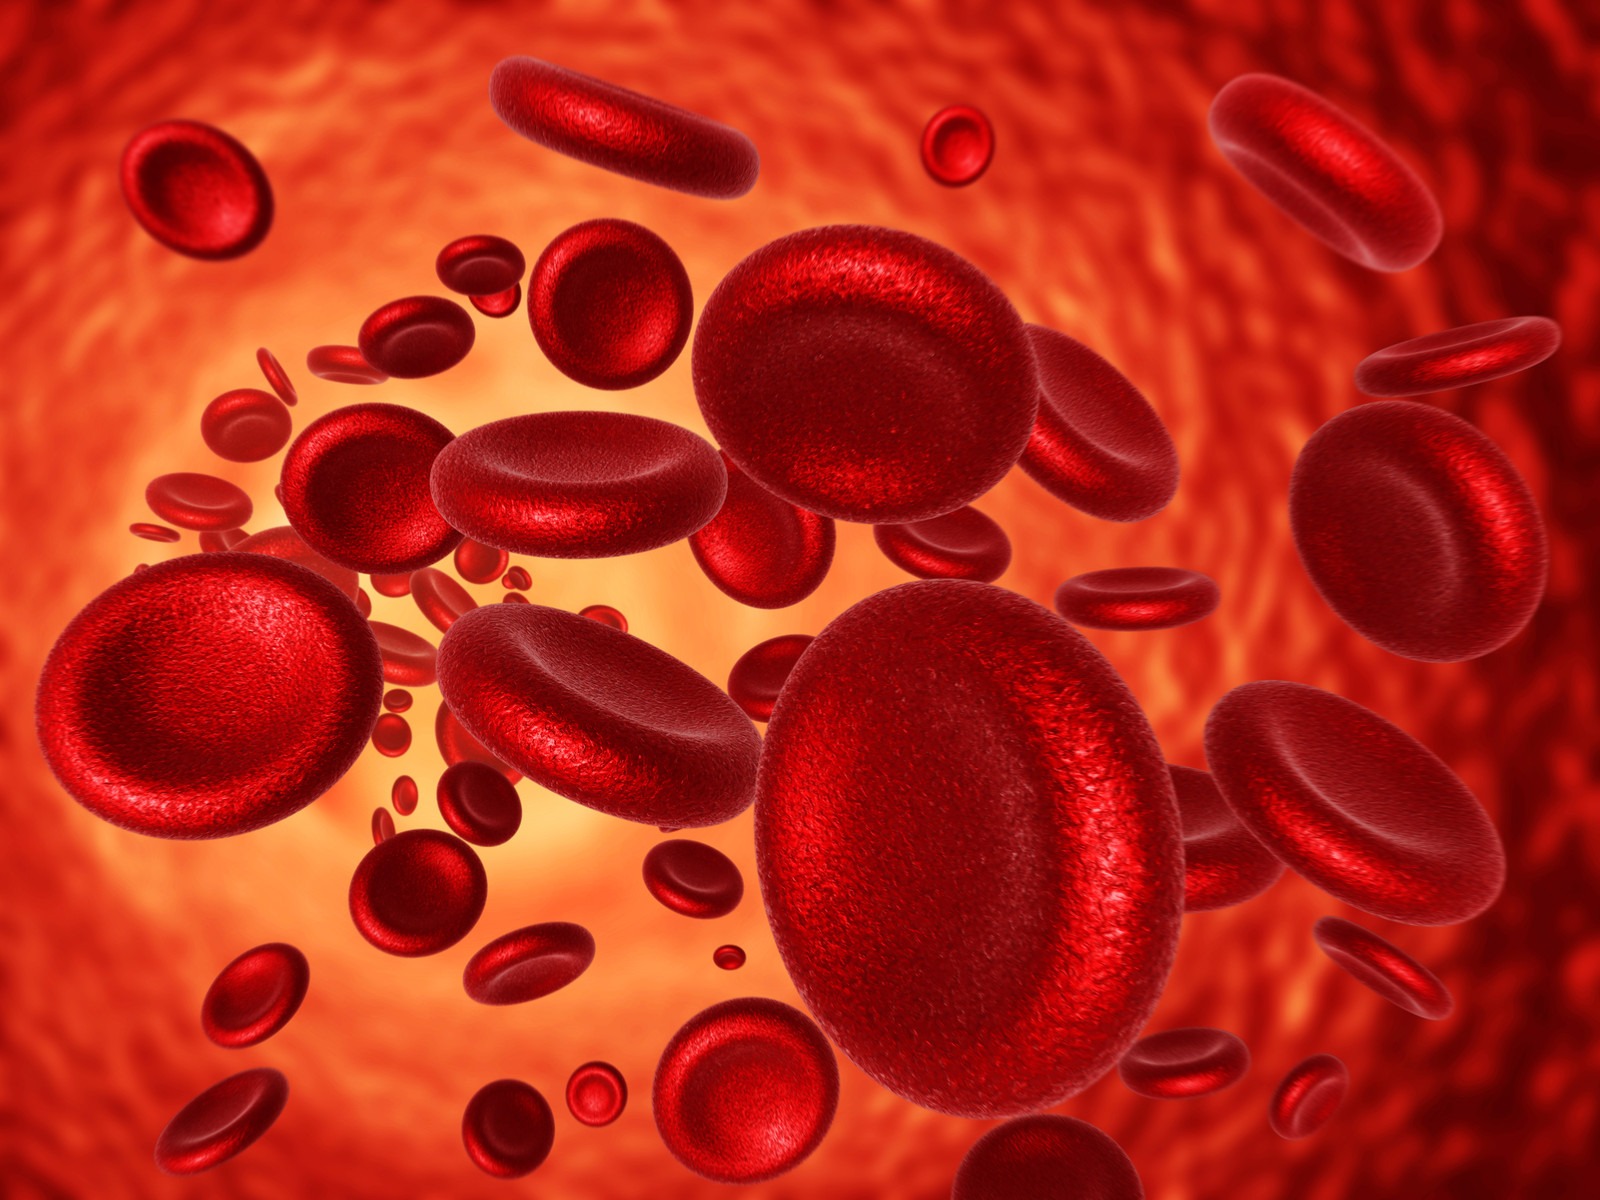 صورة اللوكيميا مرض يصيب خلايا الدم الحمراء